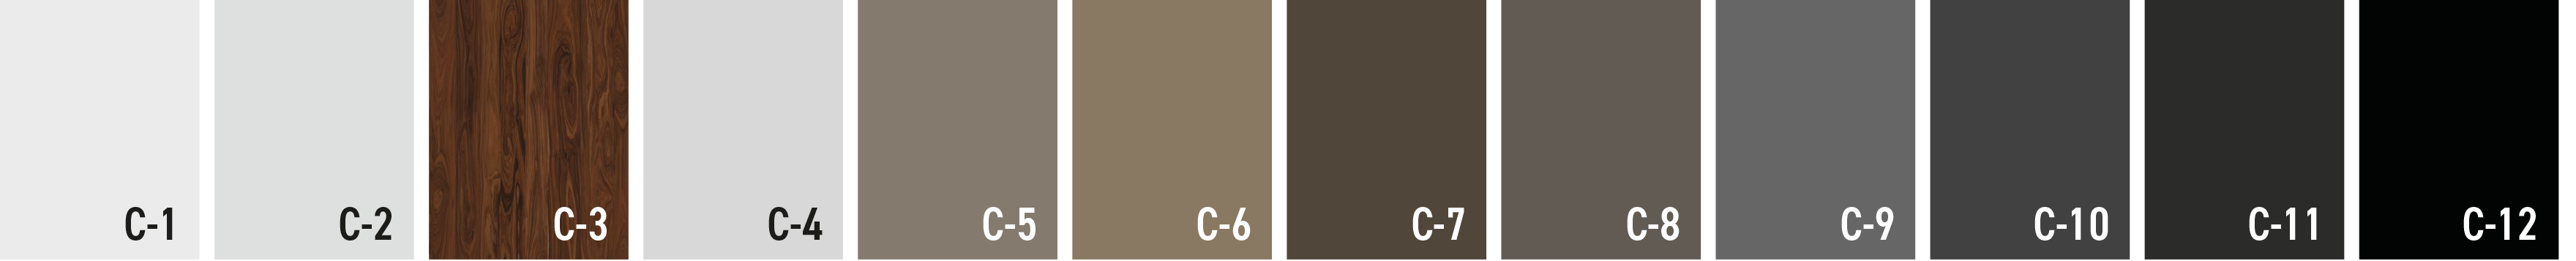 N1-Colors-(1).png